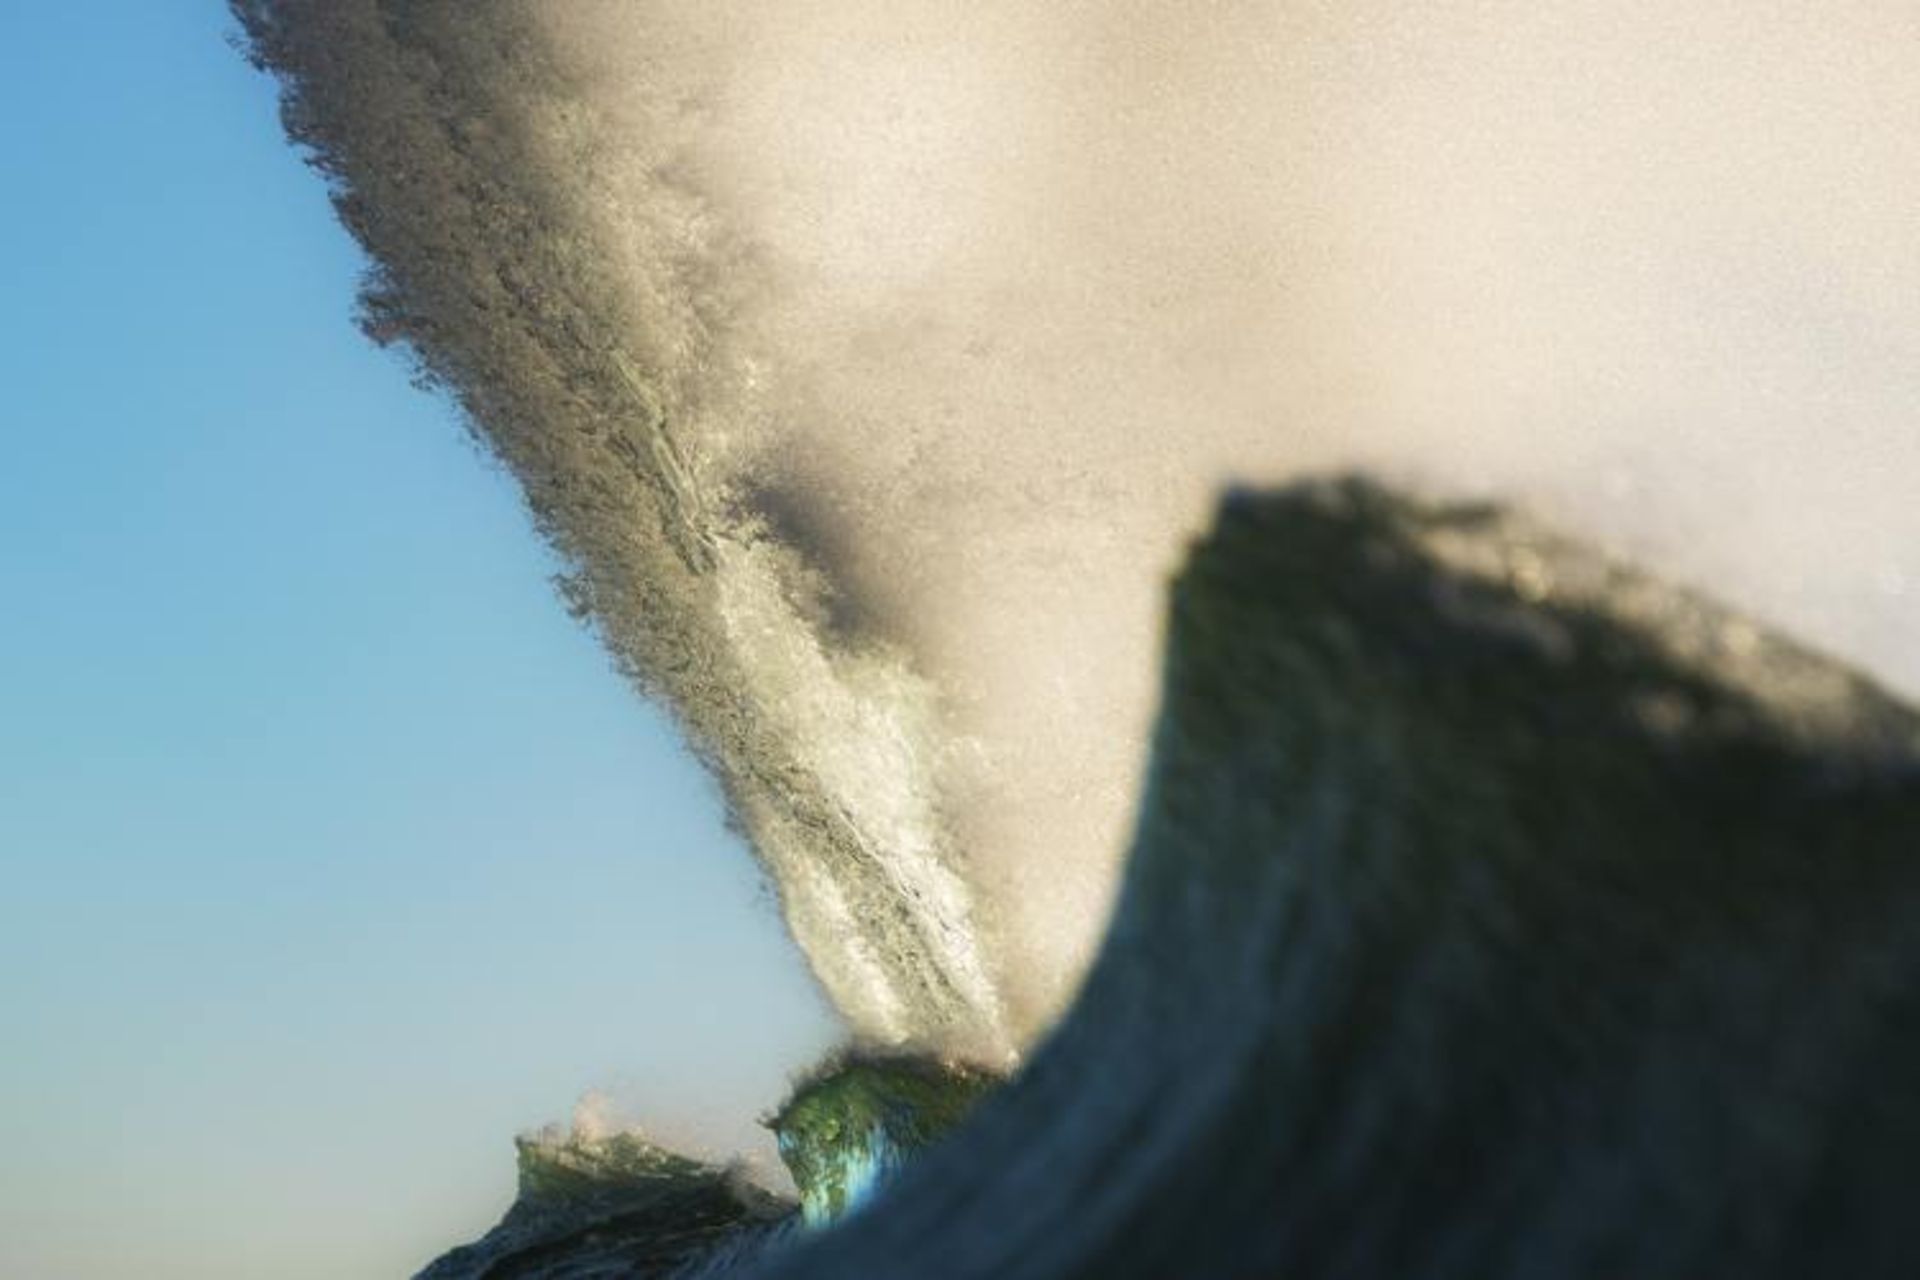 مرجع متخصصين ايران فيناليست راي كولينز در مسابقه عكاسي 2020 Surf Photo Nikon Australia